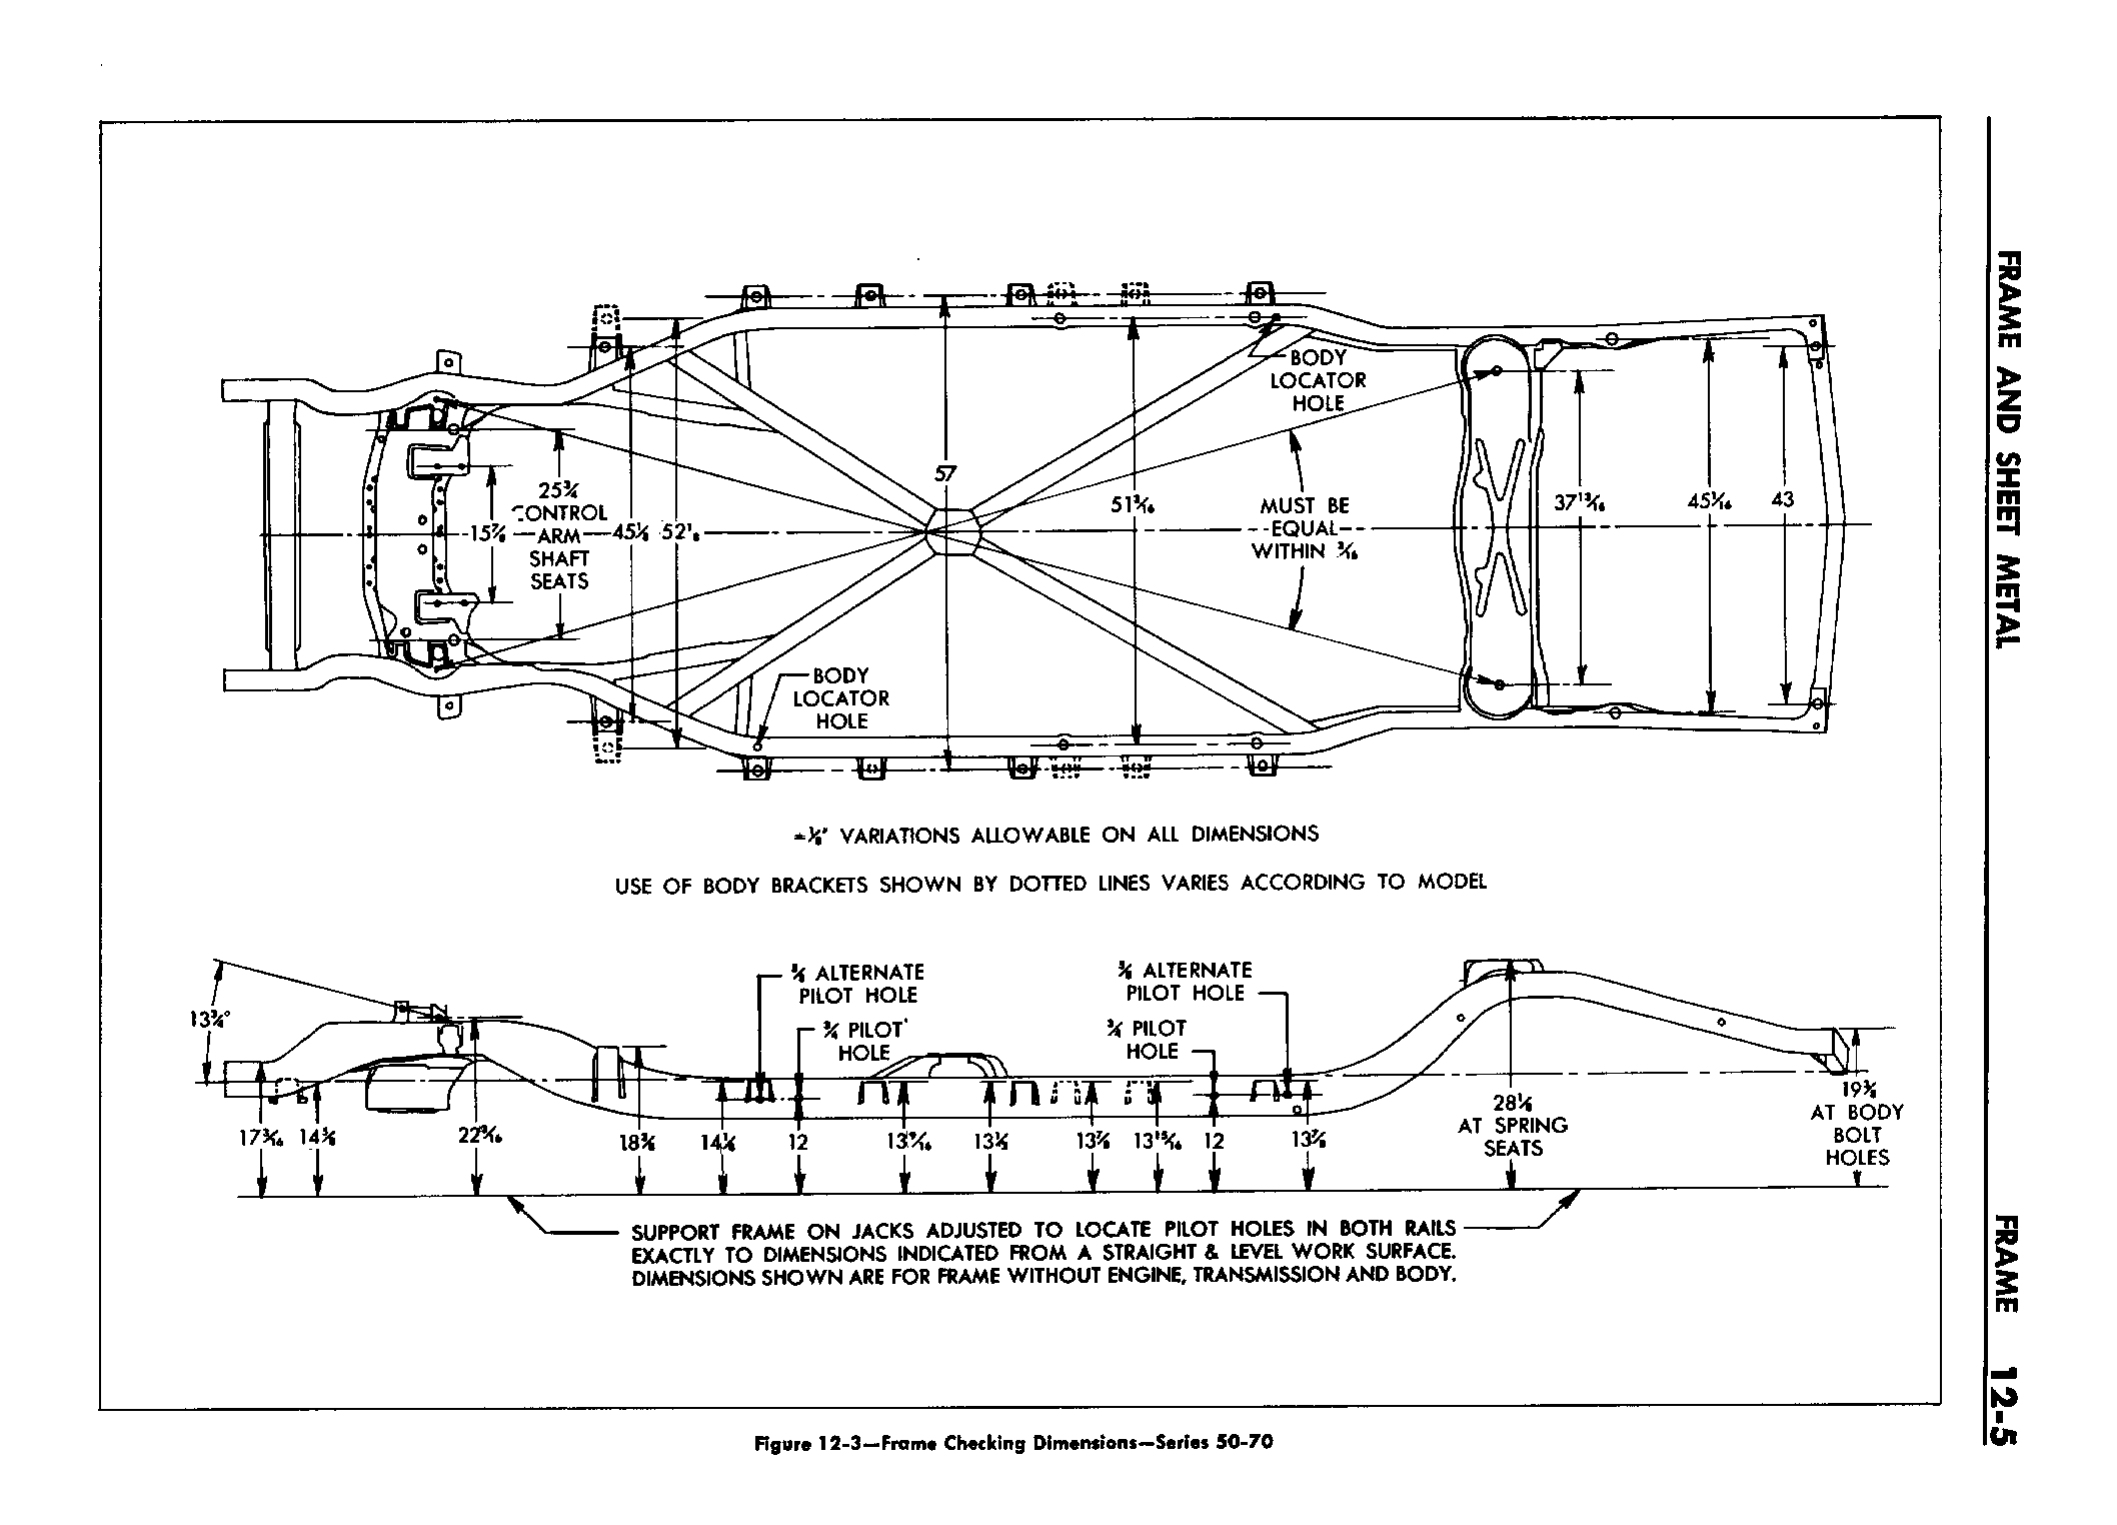 n_13 1958 Buick Shop Manual - Frame & Sheet Metal_5.jpg